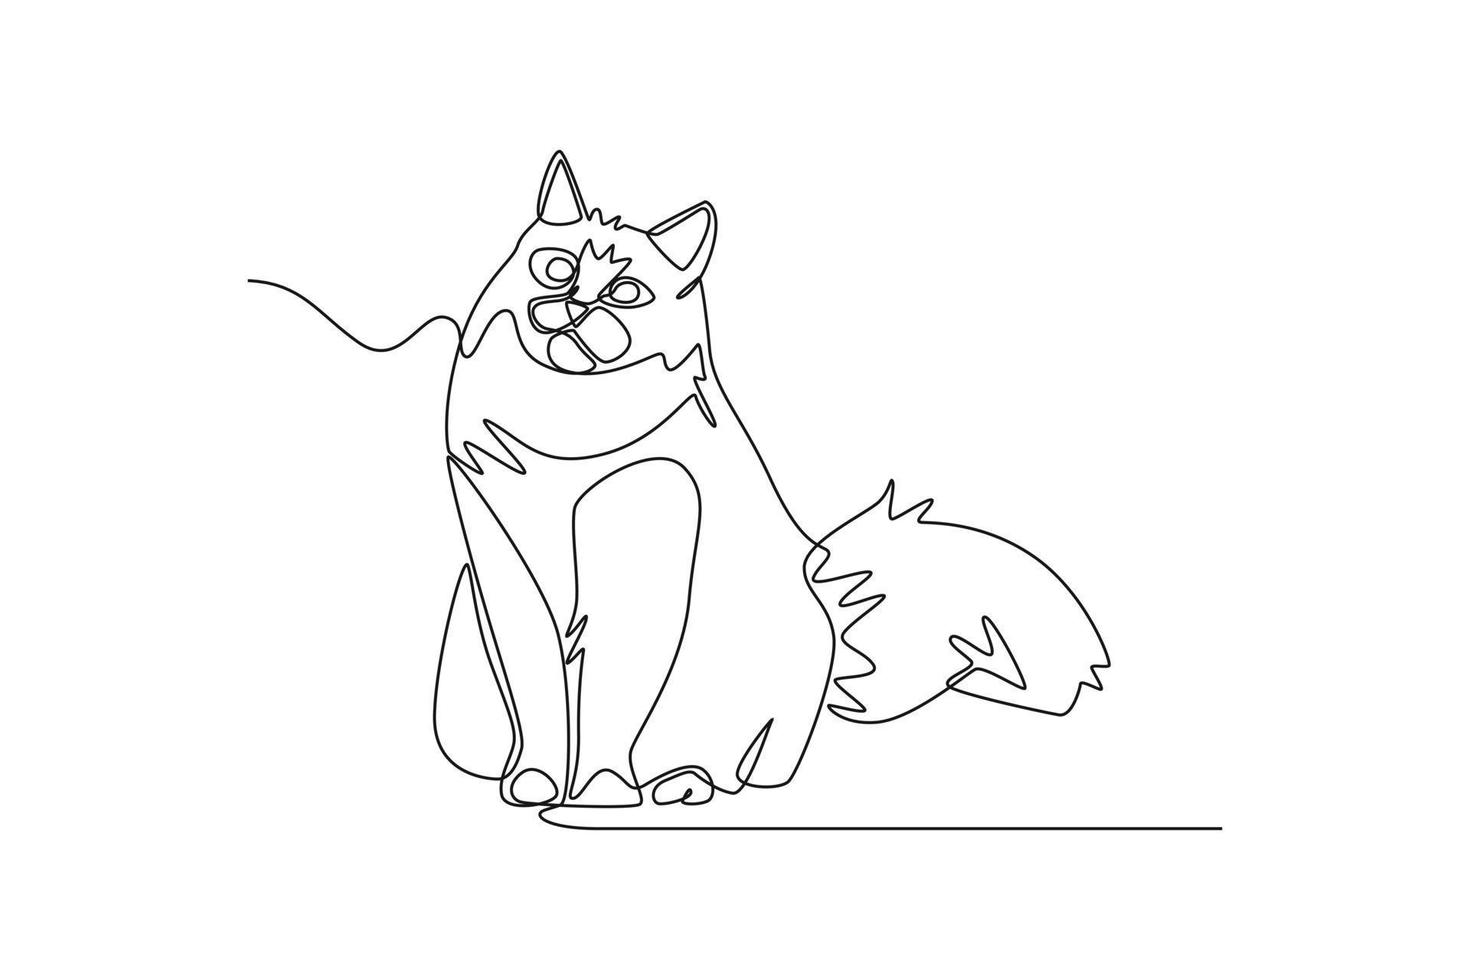 kontinuierlich eine Linie Zeichnung ein Katze ist Sitzung auf das Fußboden . Tiere Konzept Single Linie zeichnen Design Grafik Vektor Illustration